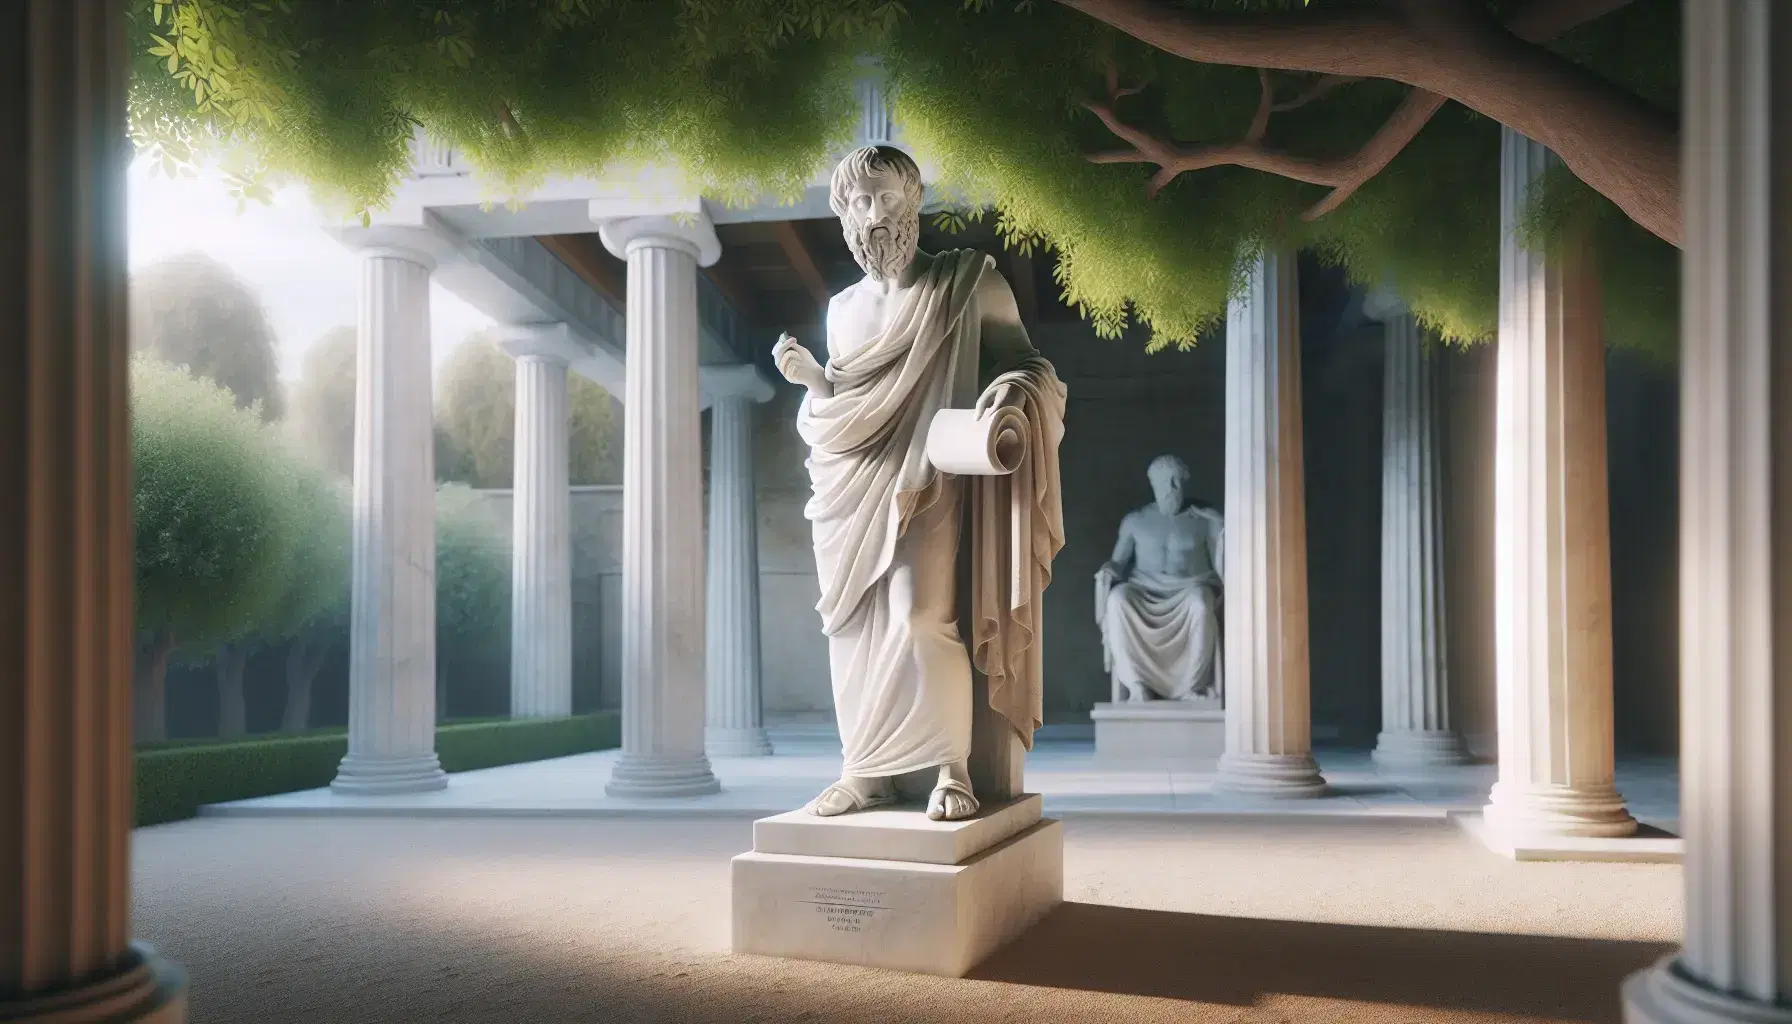 Estatua de mármol blanco de Platón con túnica, sosteniendo un papiro y con la mano derecha alzada, frente a columnas dóricas y vegetación en un entorno que evoca una academia antigua.